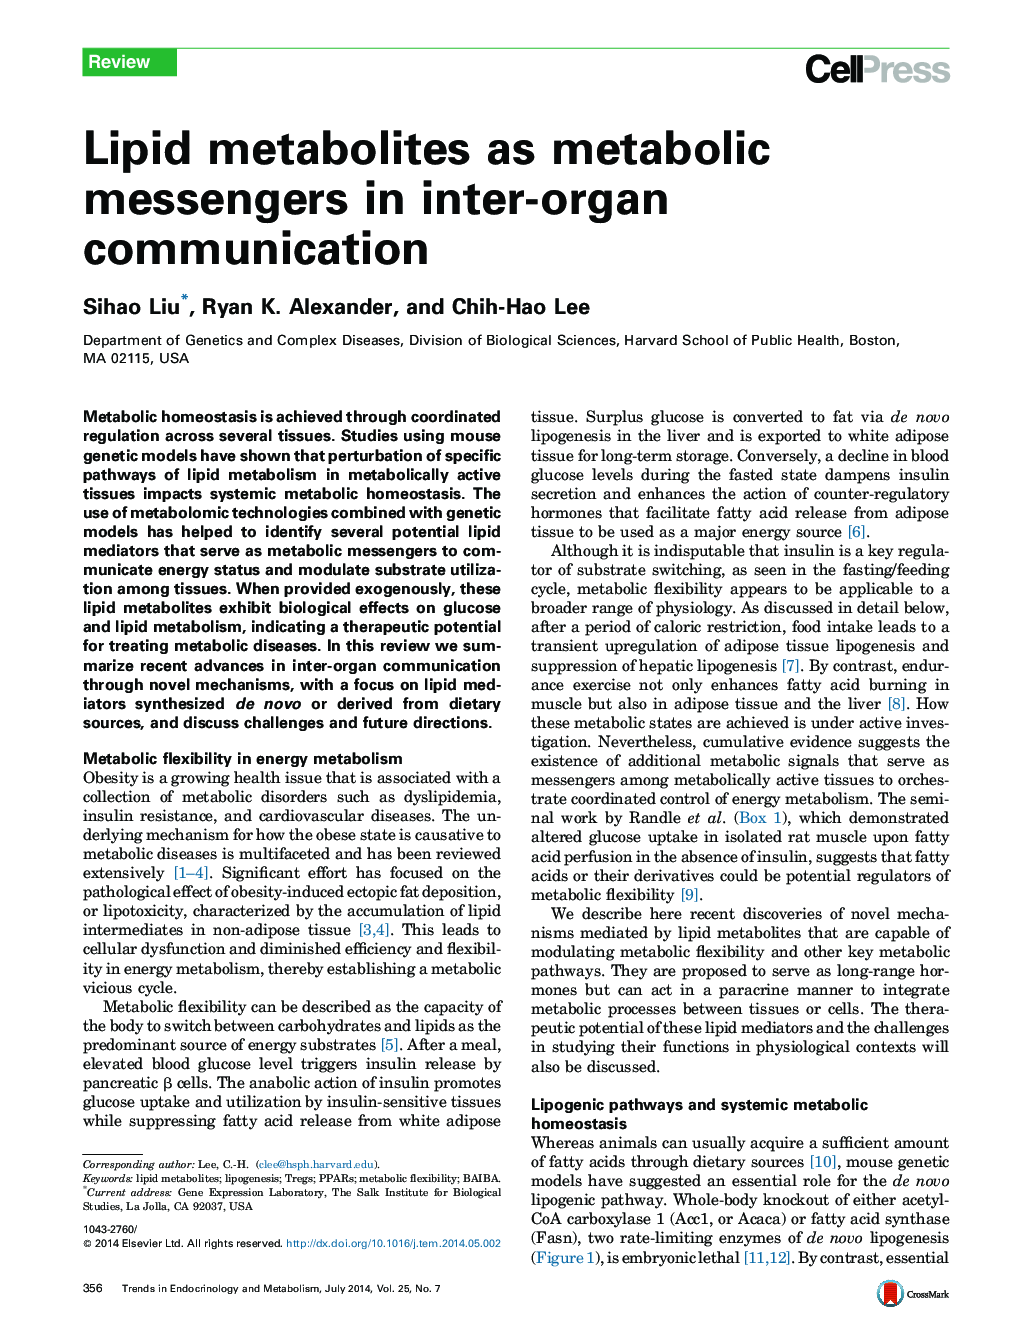 Lipid metabolites as metabolic messengers in inter-organ communication